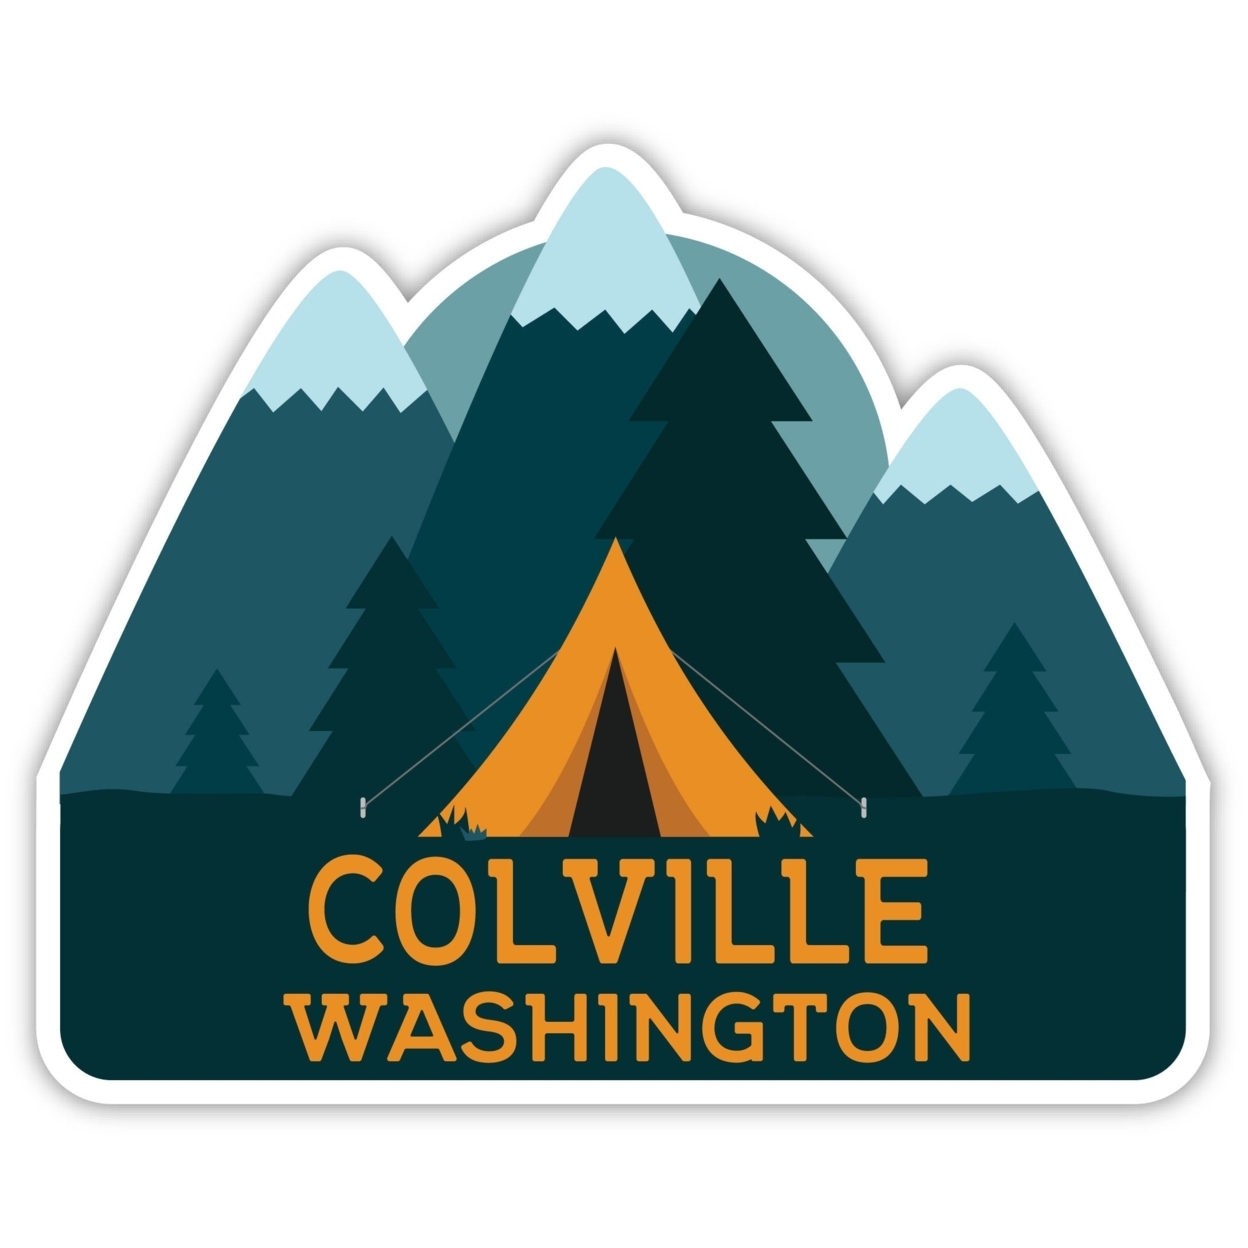 Colville Washington Souvenir Decorative Stickers (Choose Theme And Size) - Single Unit, 4-Inch, Tent